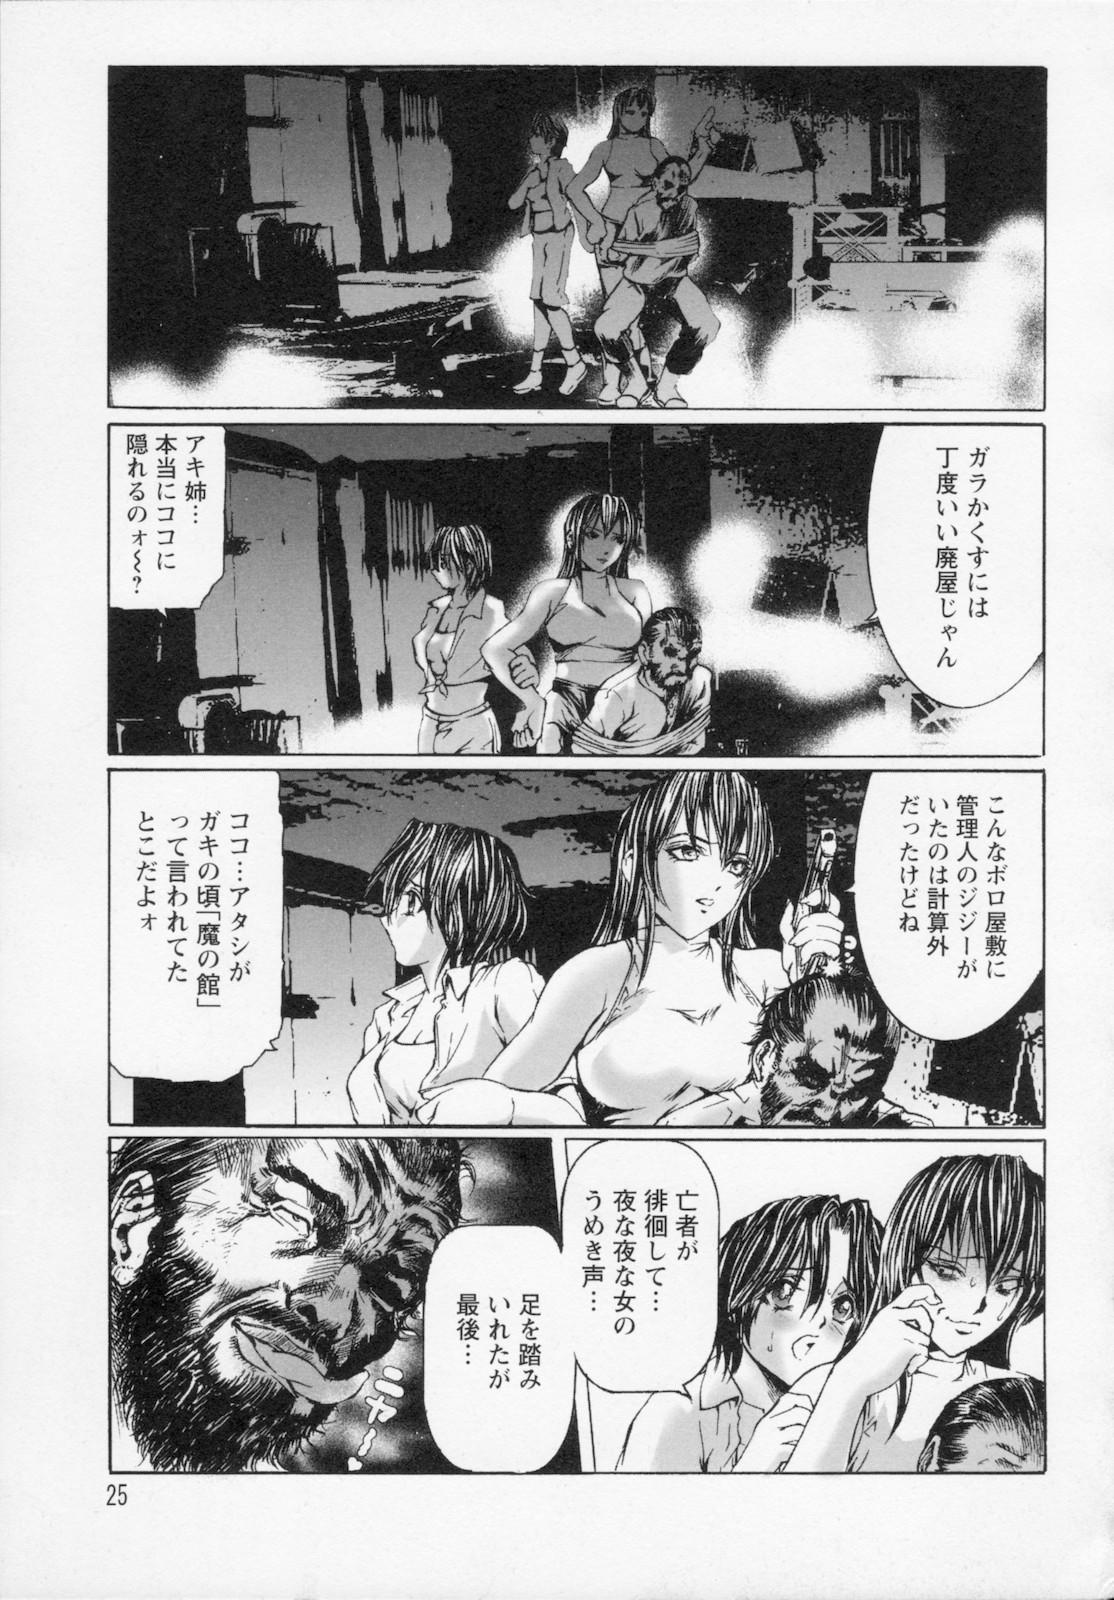 Watashi wa ryoujyoku daisuki na henatai mangaka desu 26